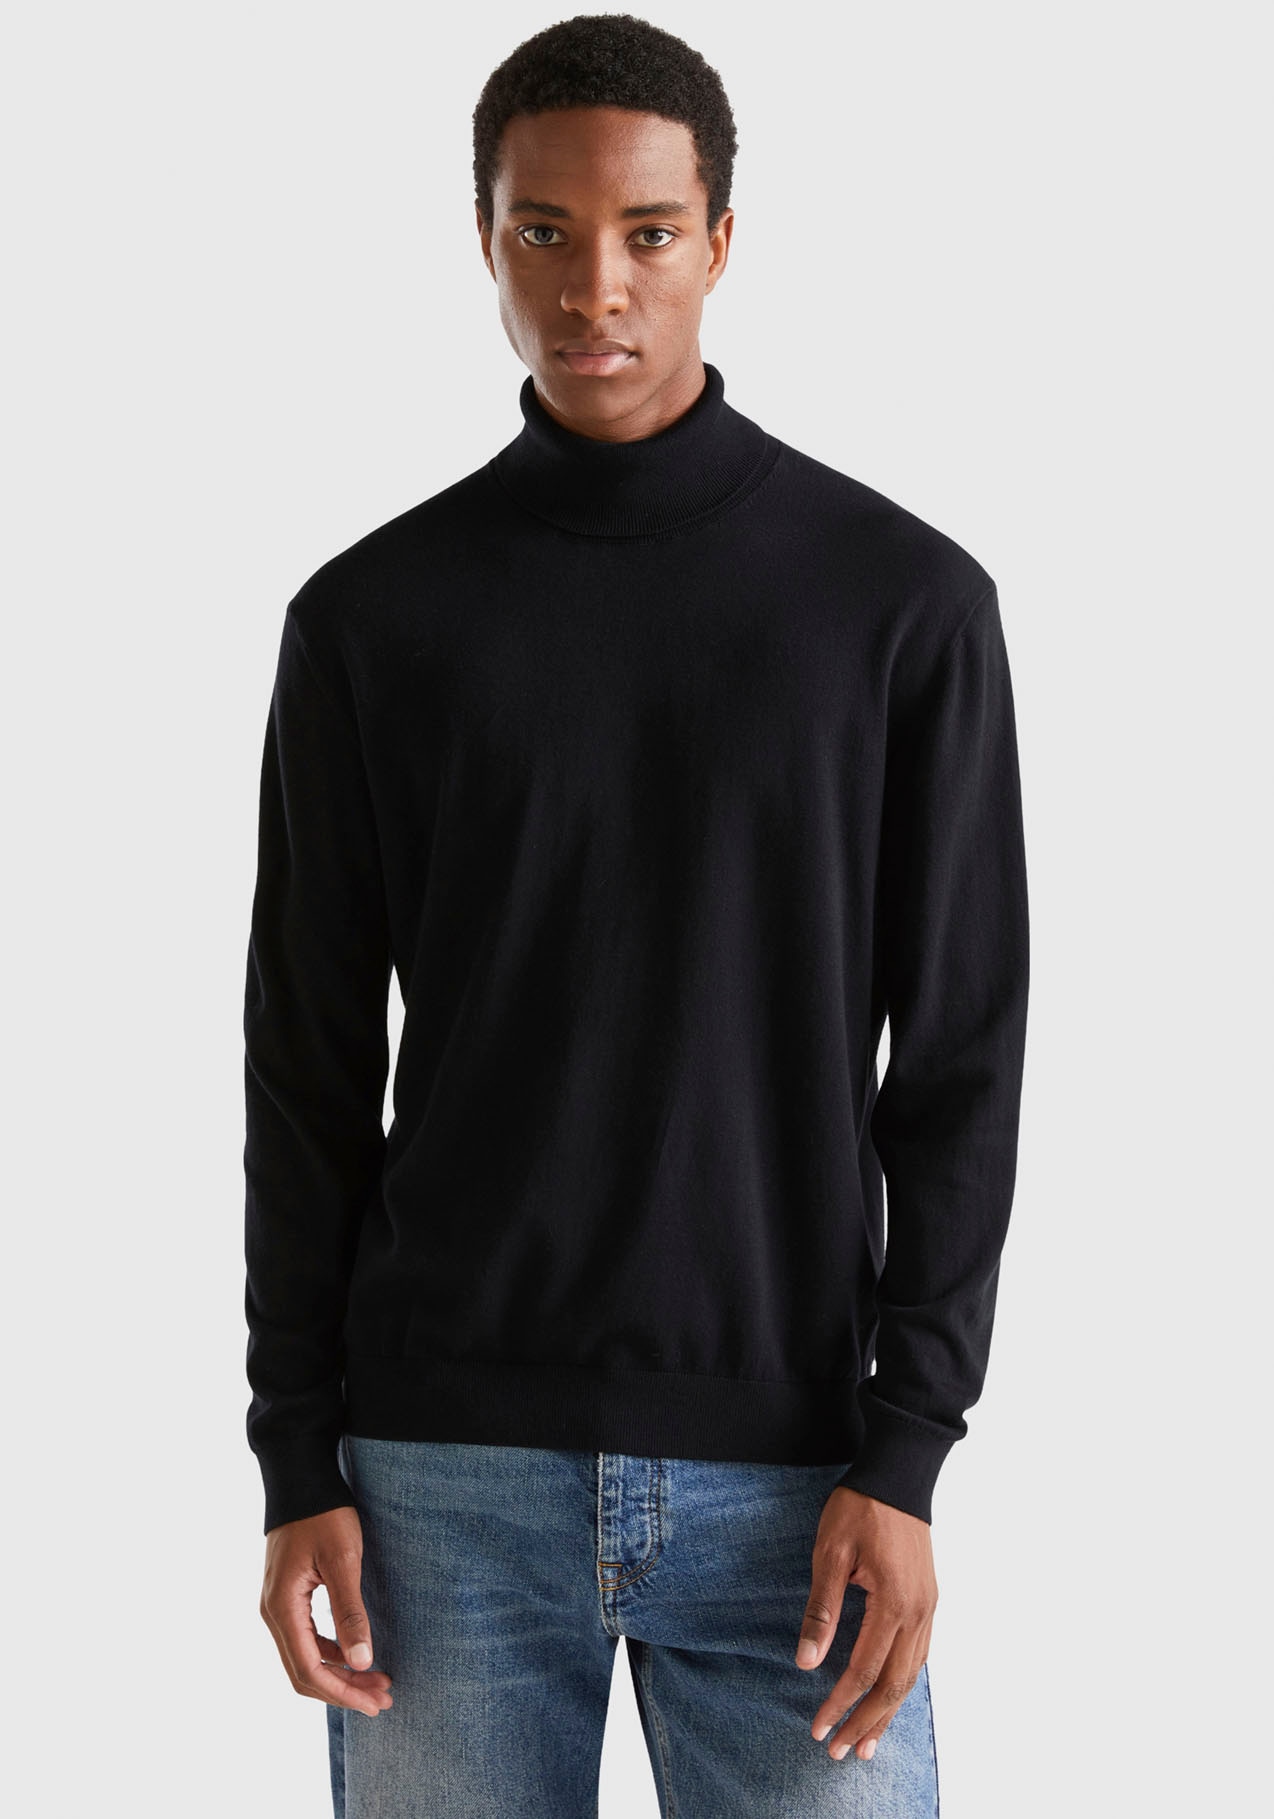 Pullover kaufen ohne ➤ - Mindestbestellwert versandkostenfrei